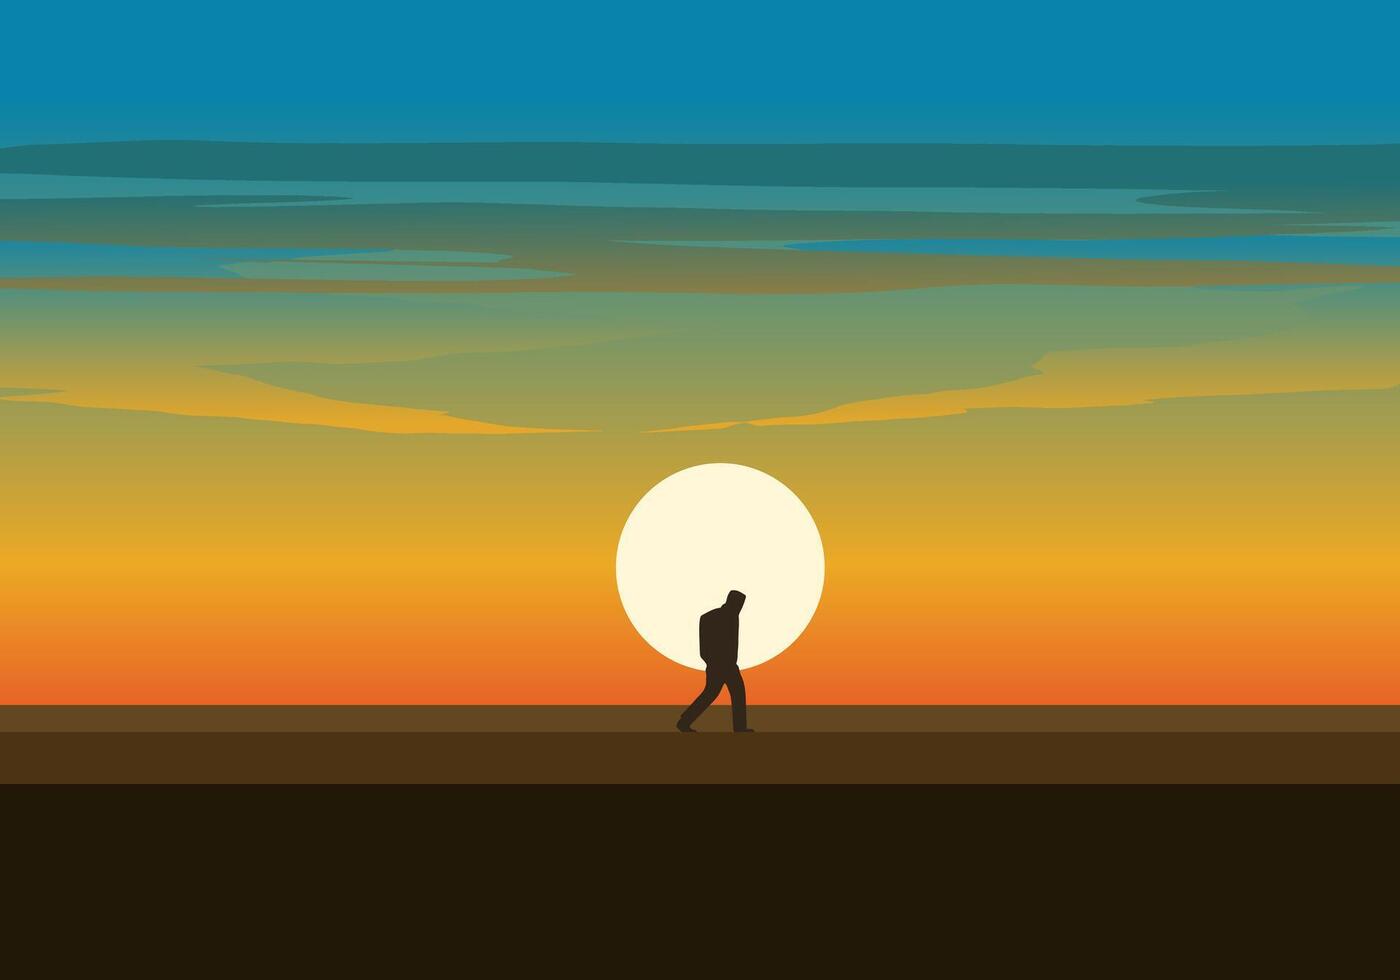 viajero caminando solo en puesta de sol vector